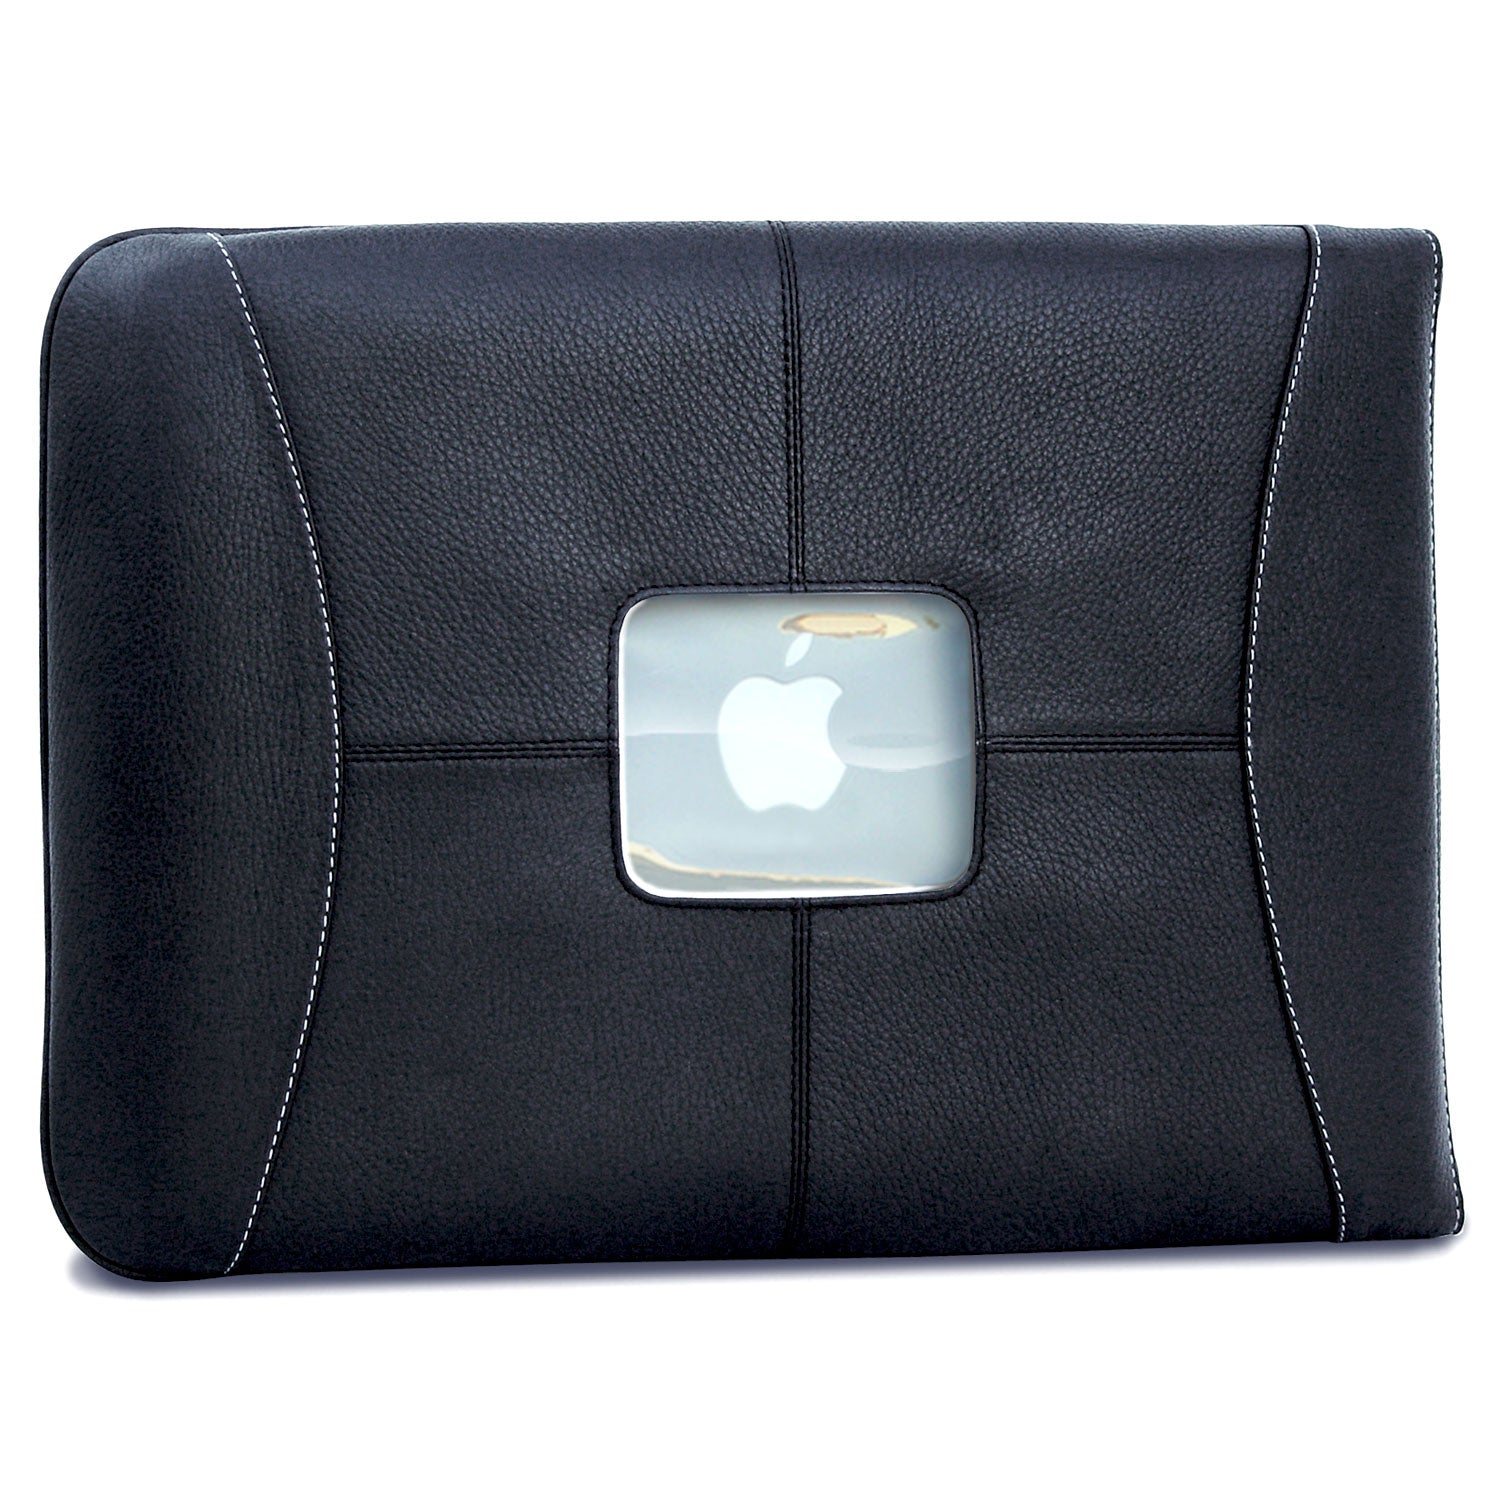 Premium Leather 16" MacBook Pro Sleeve